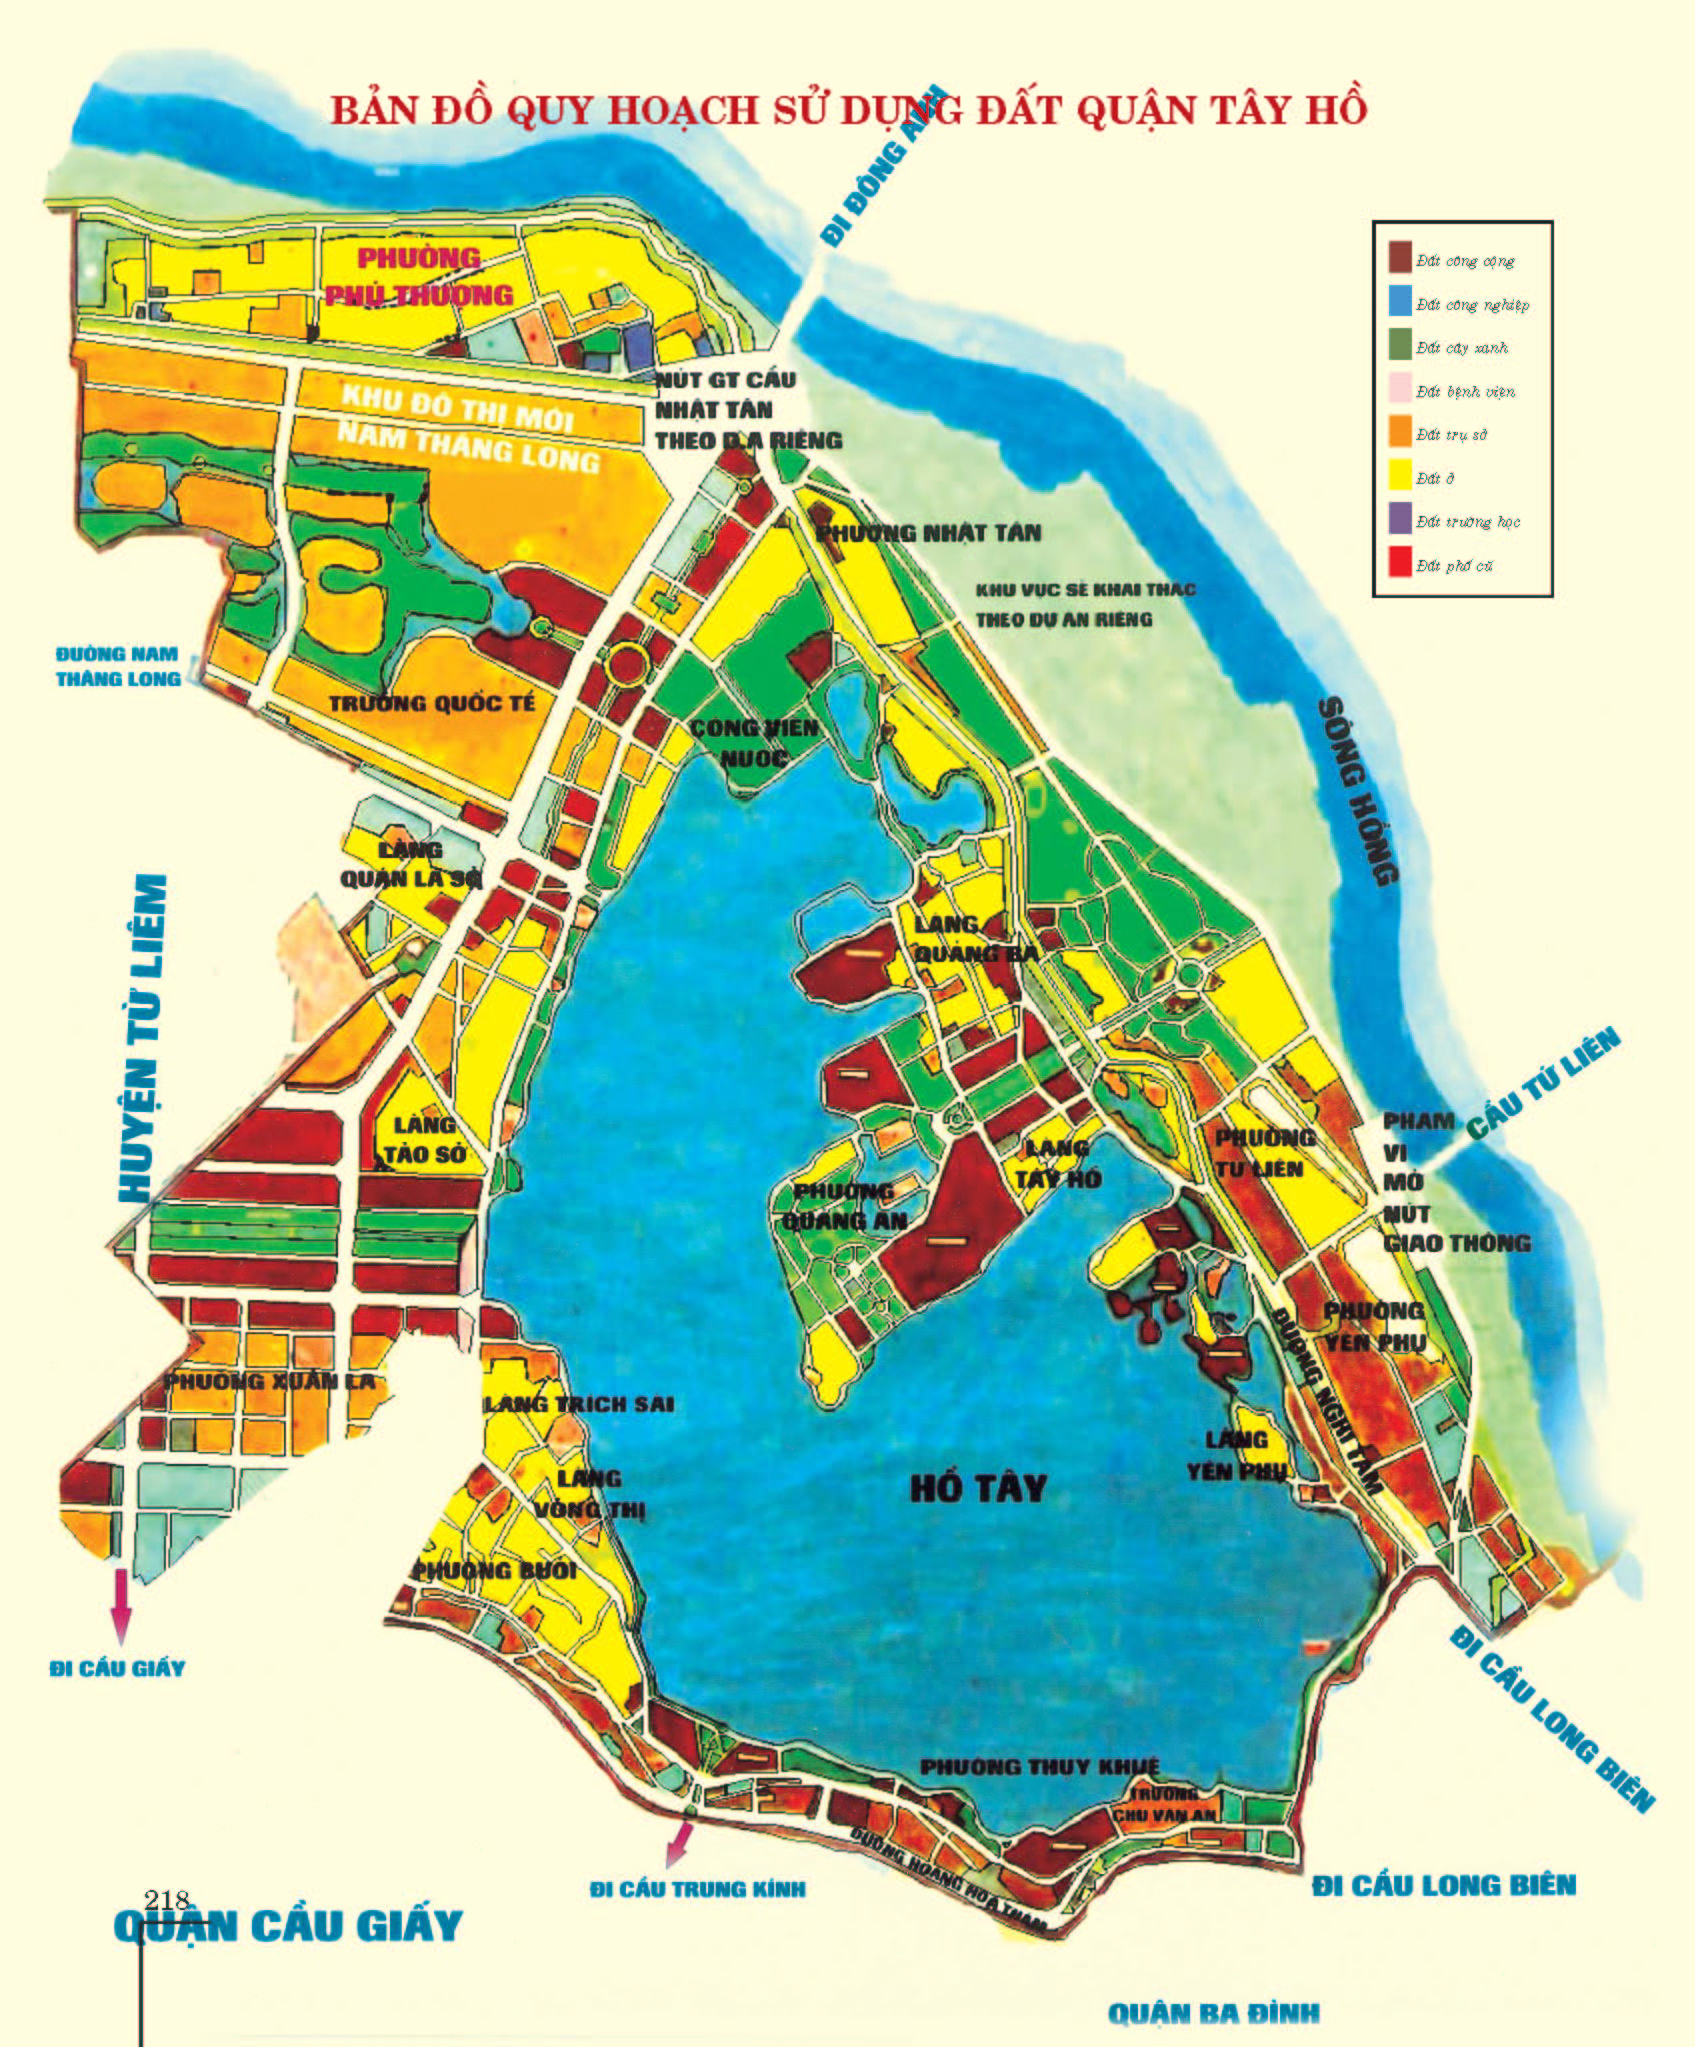 Bản đồ quy hoạch sử dụng đất tại Quận Tây Hồ năm 2022